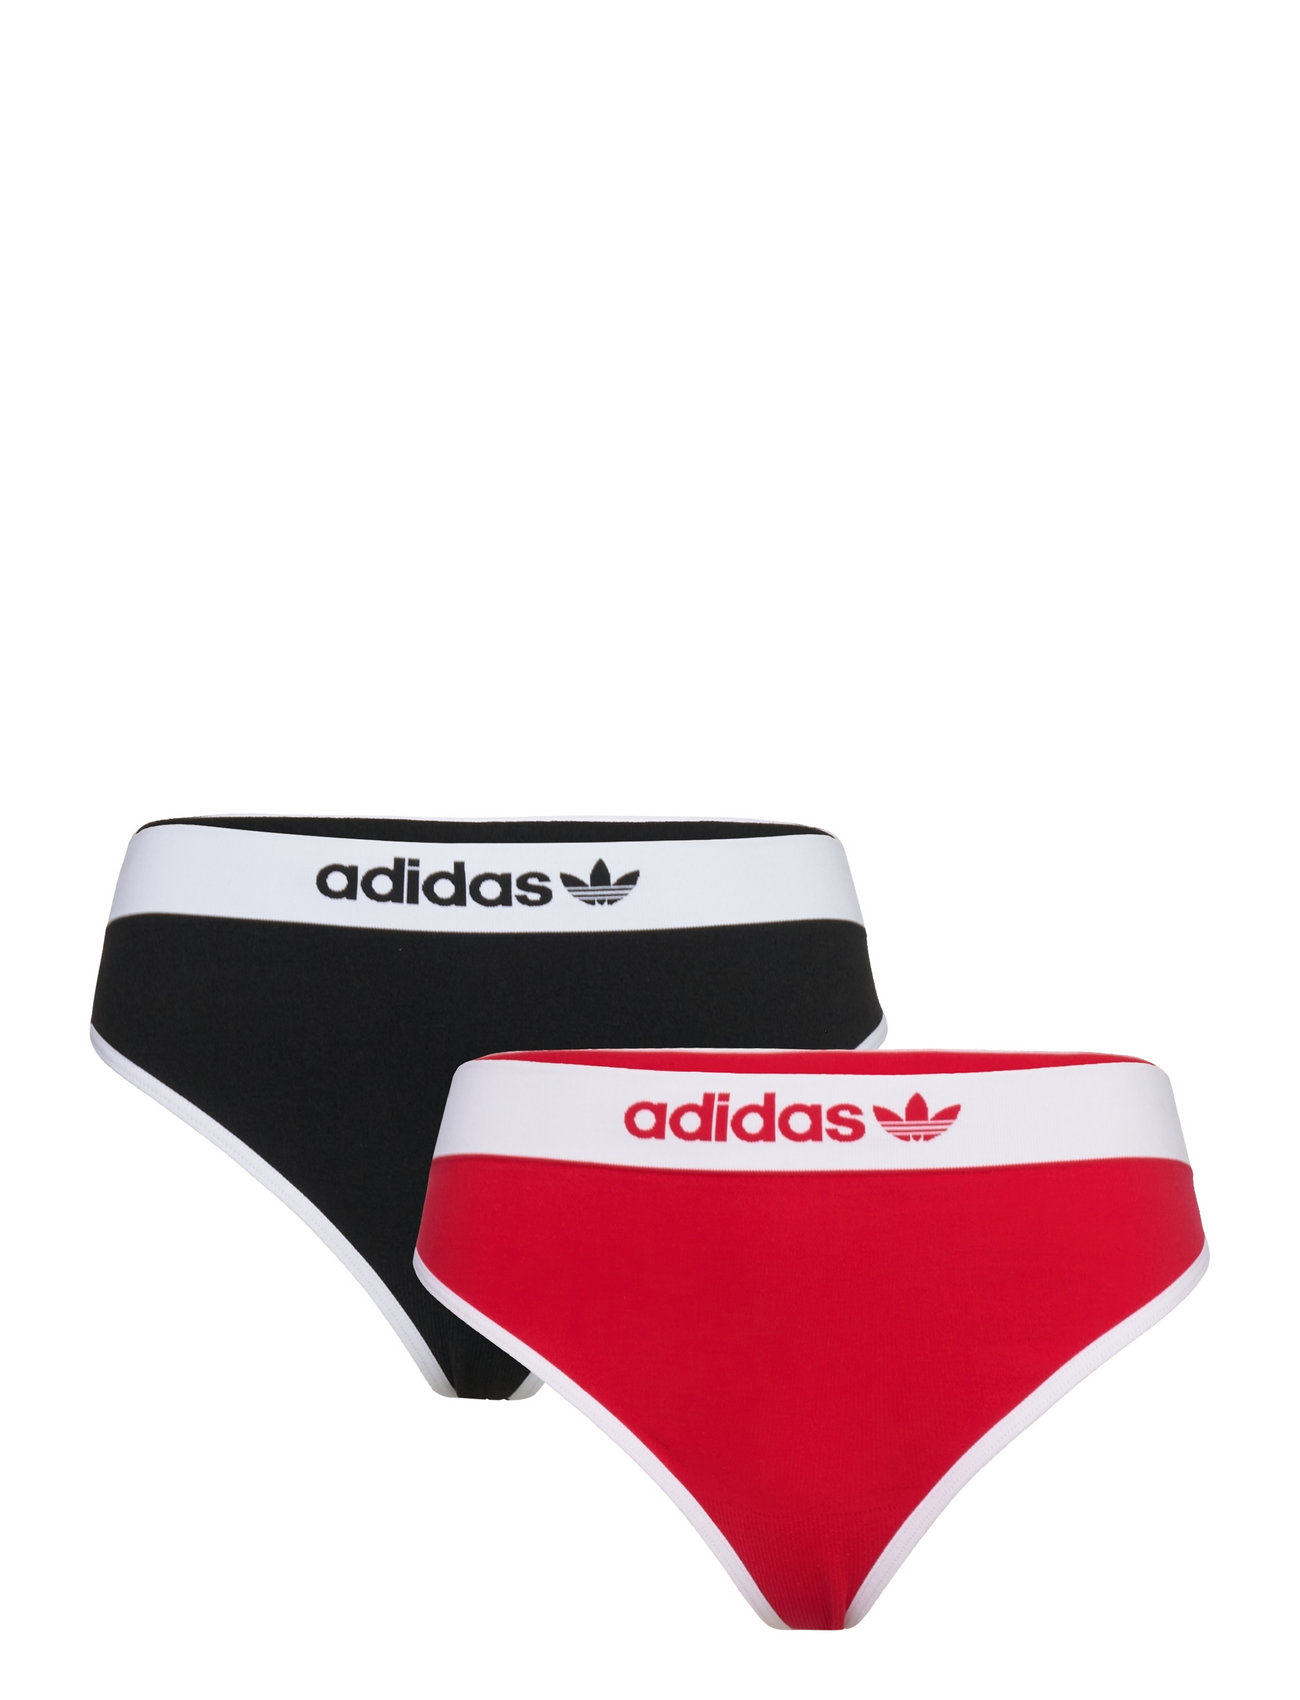 adidas Underwear Thong – seamless panty – shop at Booztlet